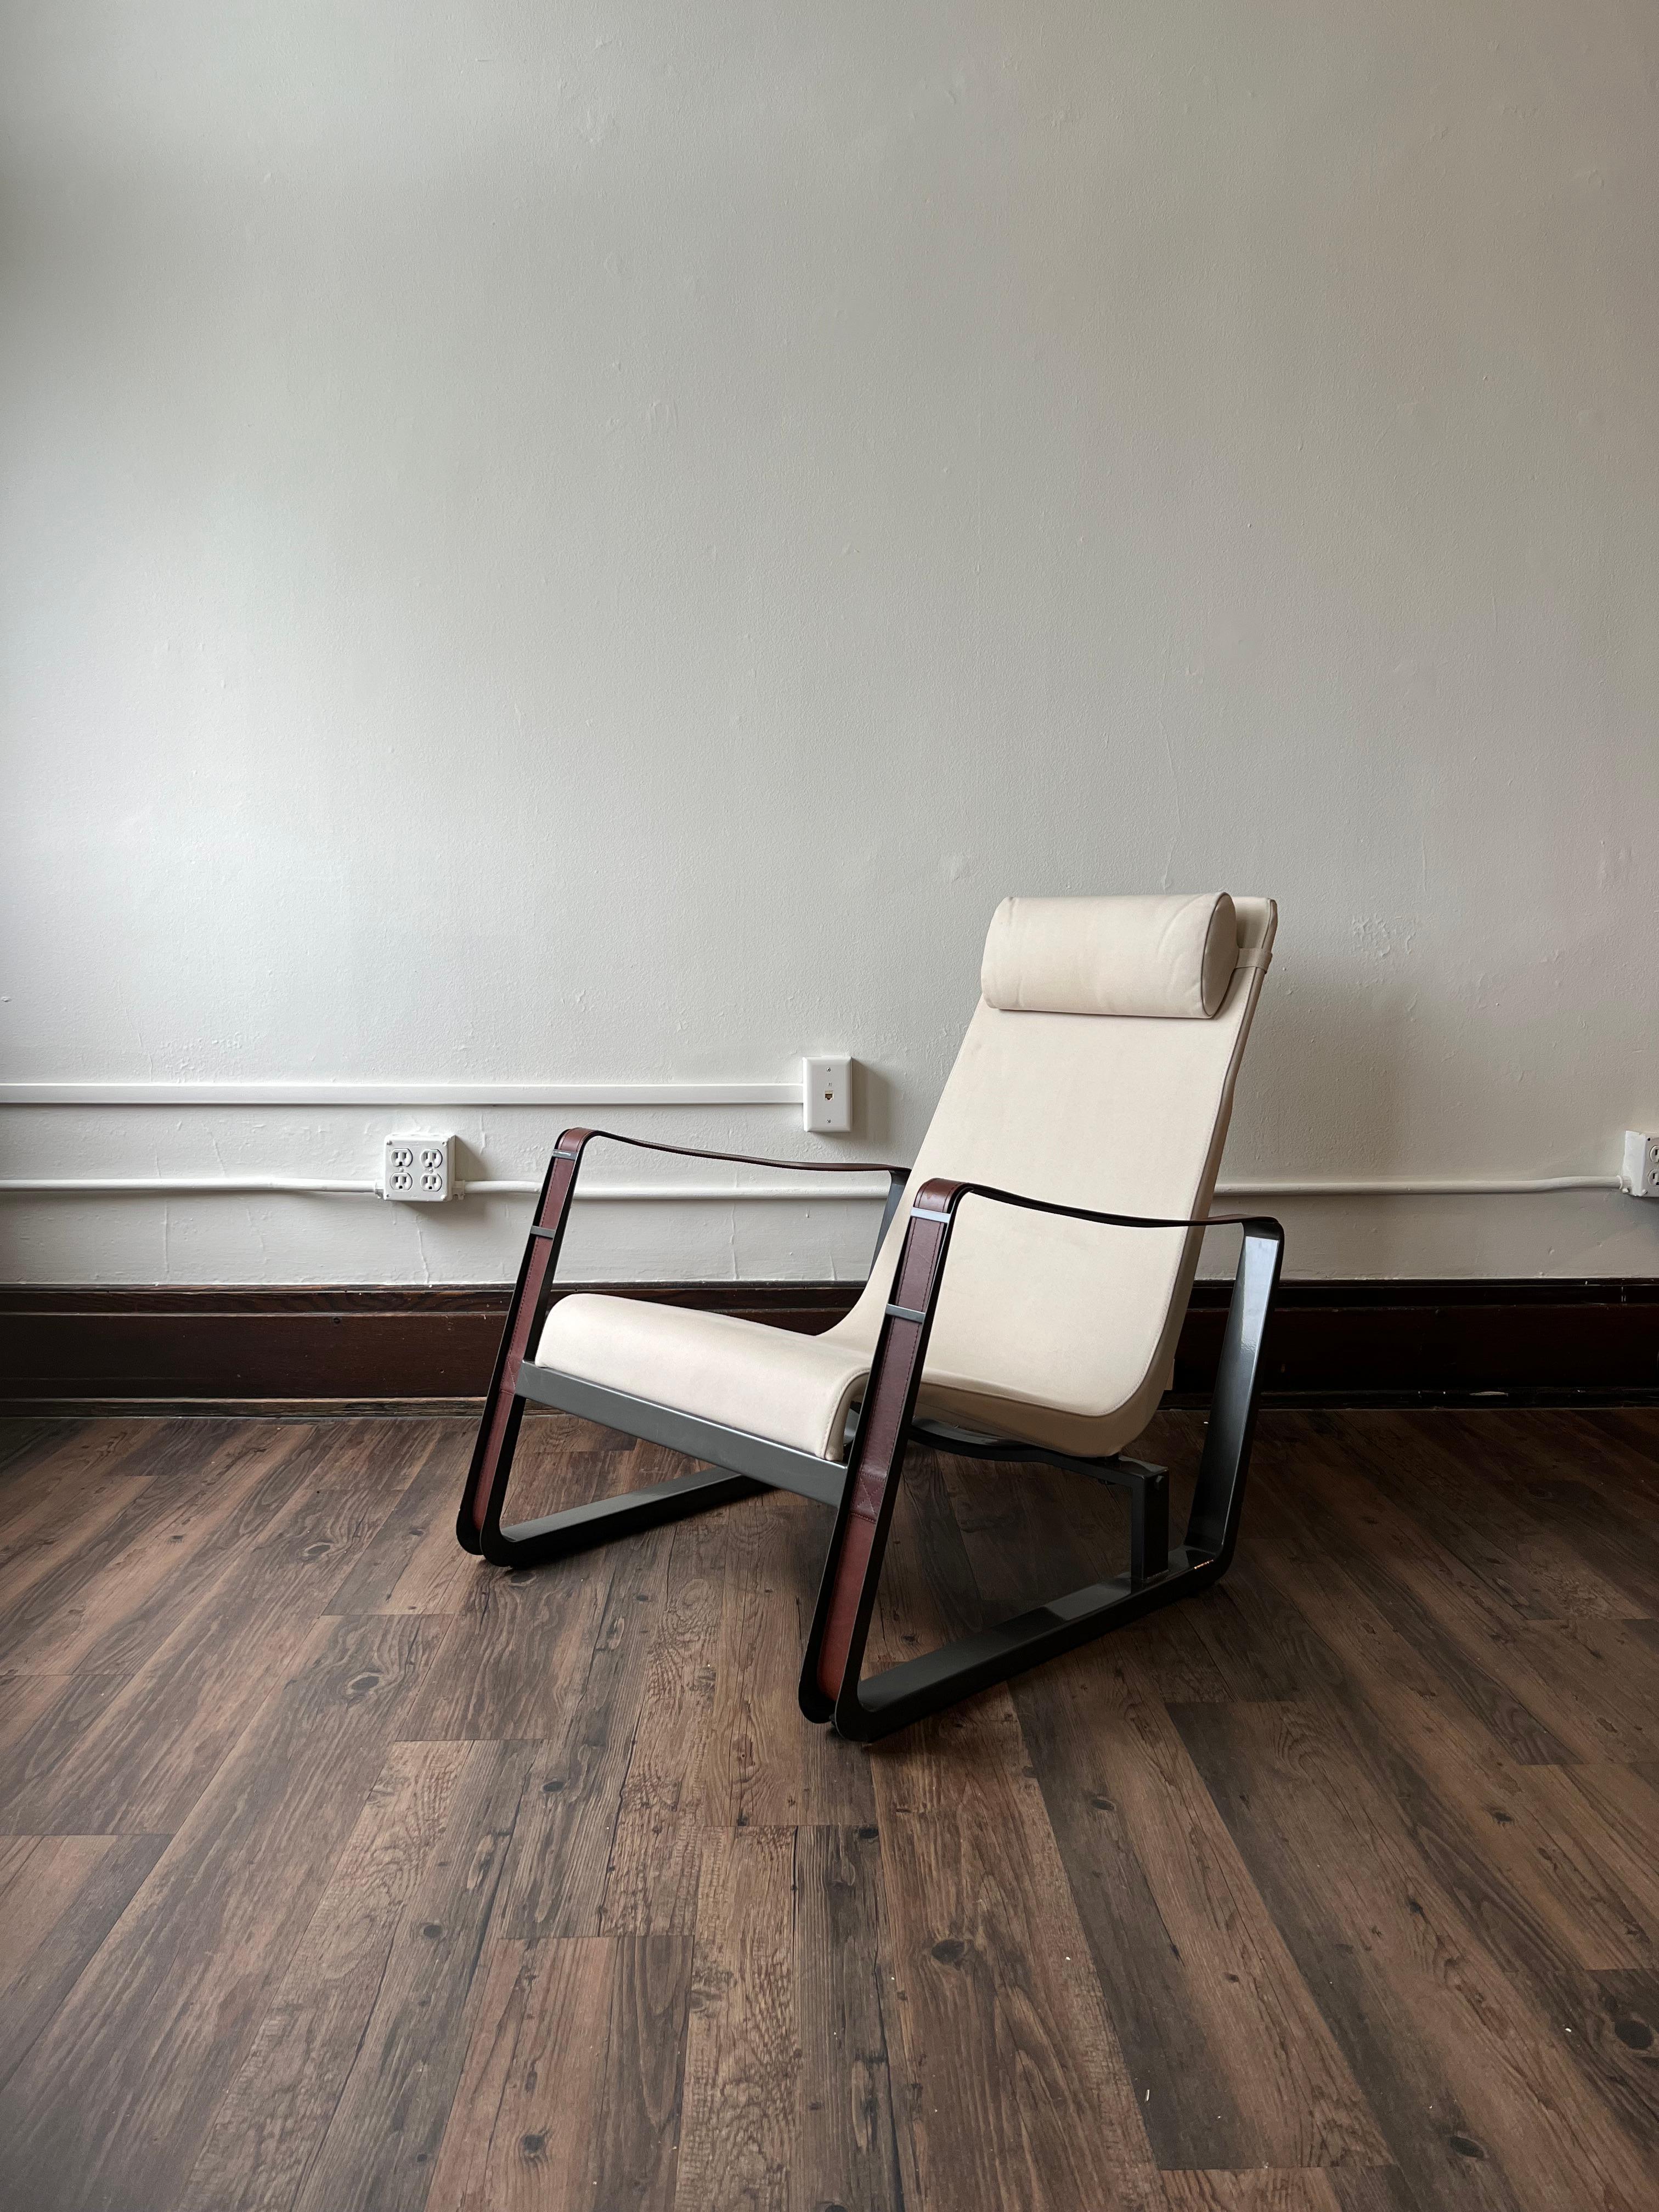 Der Loungesessel Cité ist einer der früheren Möbelentwürfe von Prouvé und passt perfekt in die moderne Wohnung, in der Prouvé ihn selbst verwendet hat. Jean Prouvé war ein 